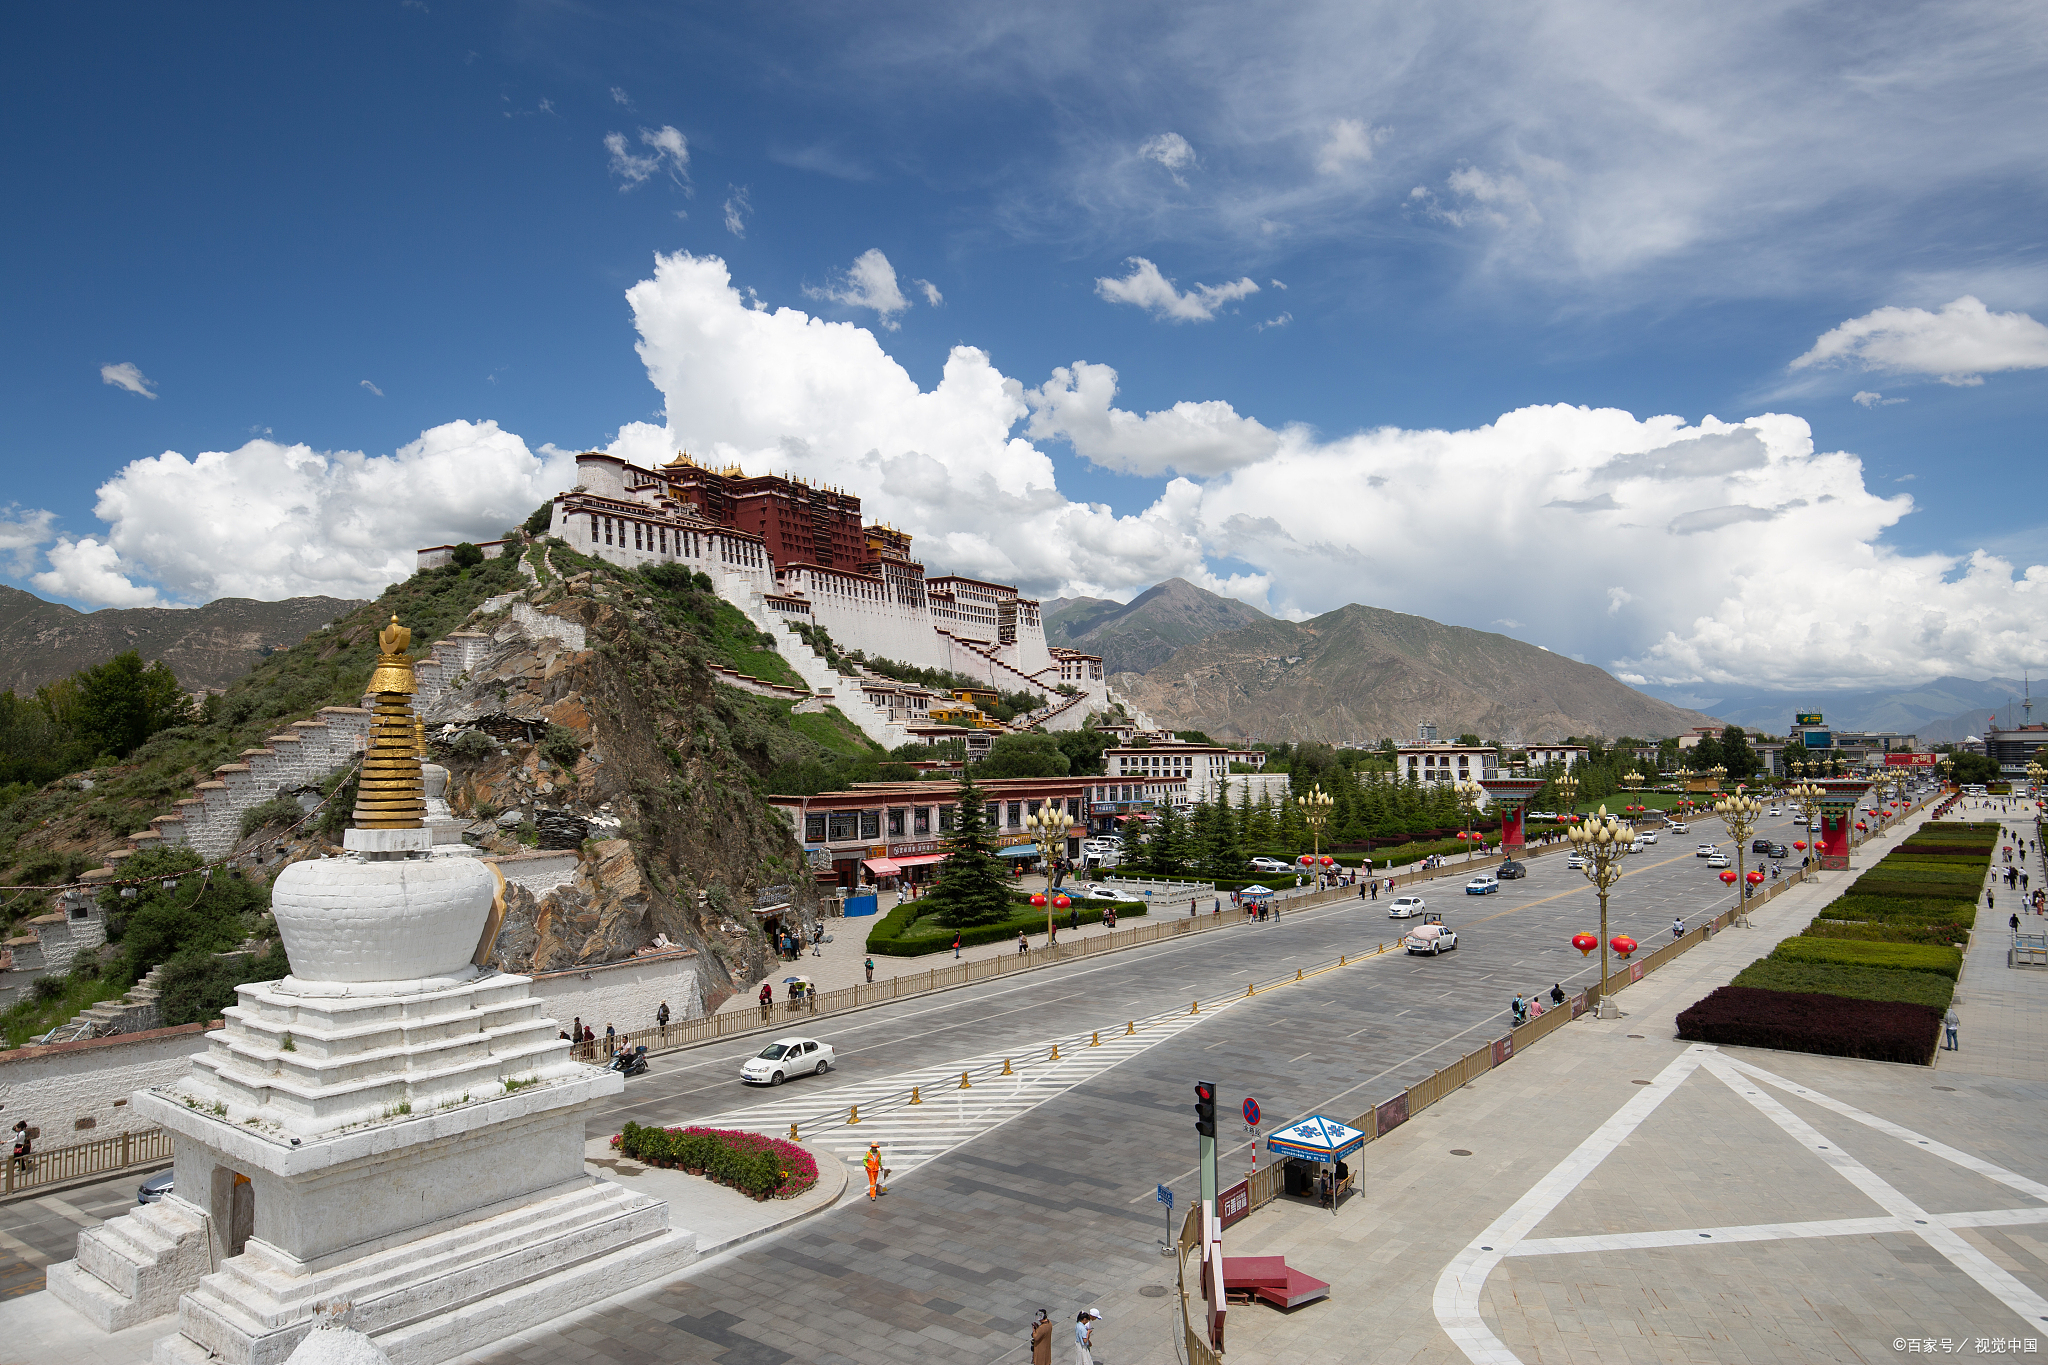 拉萨布达拉宫,神圣庄严的藏传佛教圣地,一直是旅行者们向往的目的地